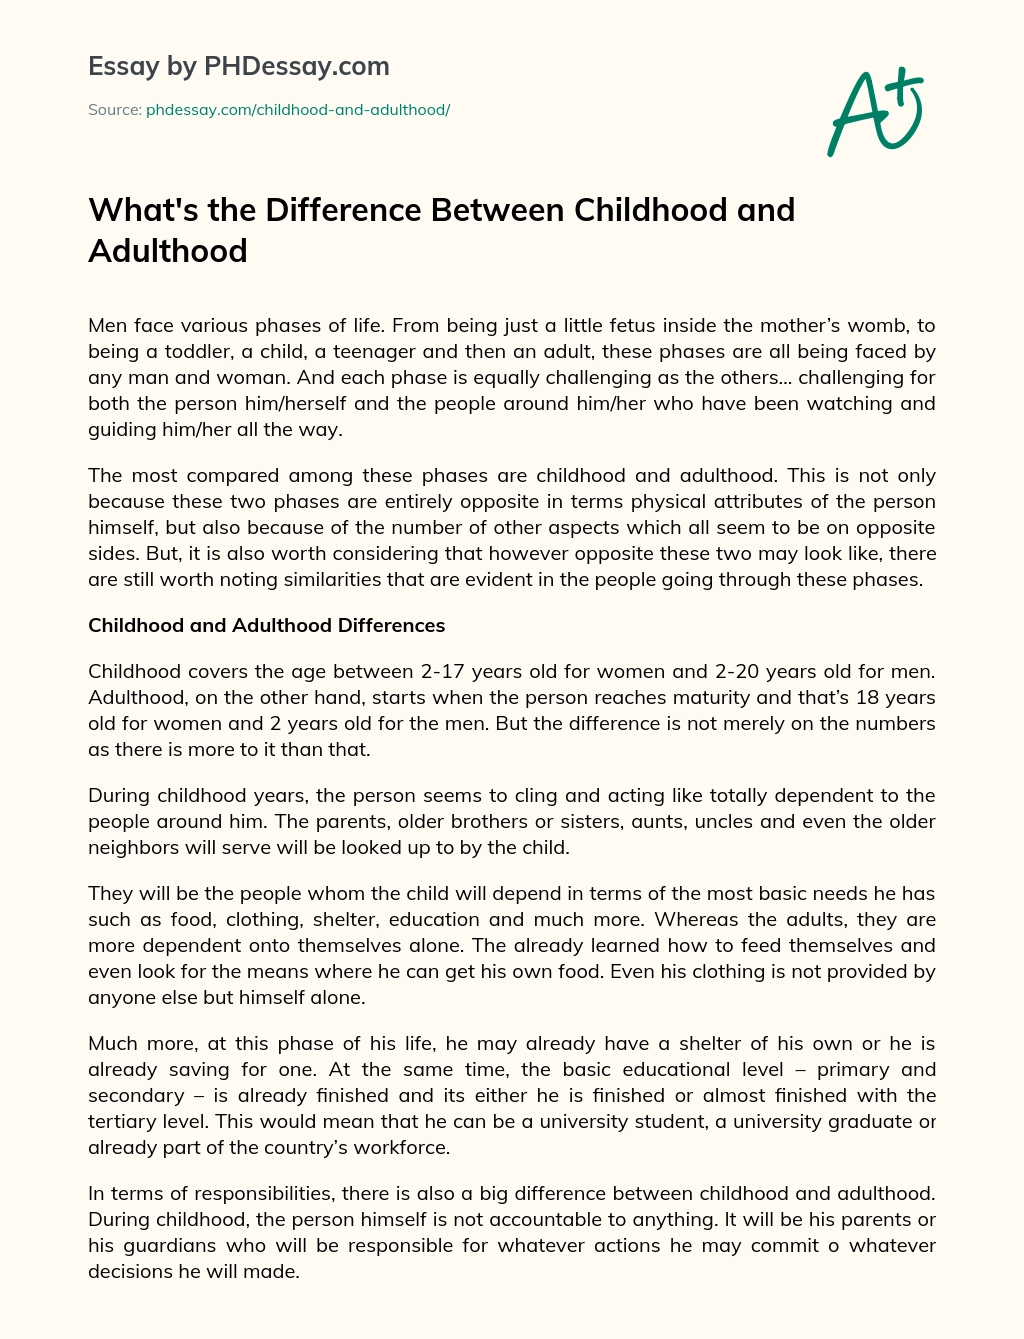  Quelle est la différence Entre l'essai sur l'enfance et l'âge adulte